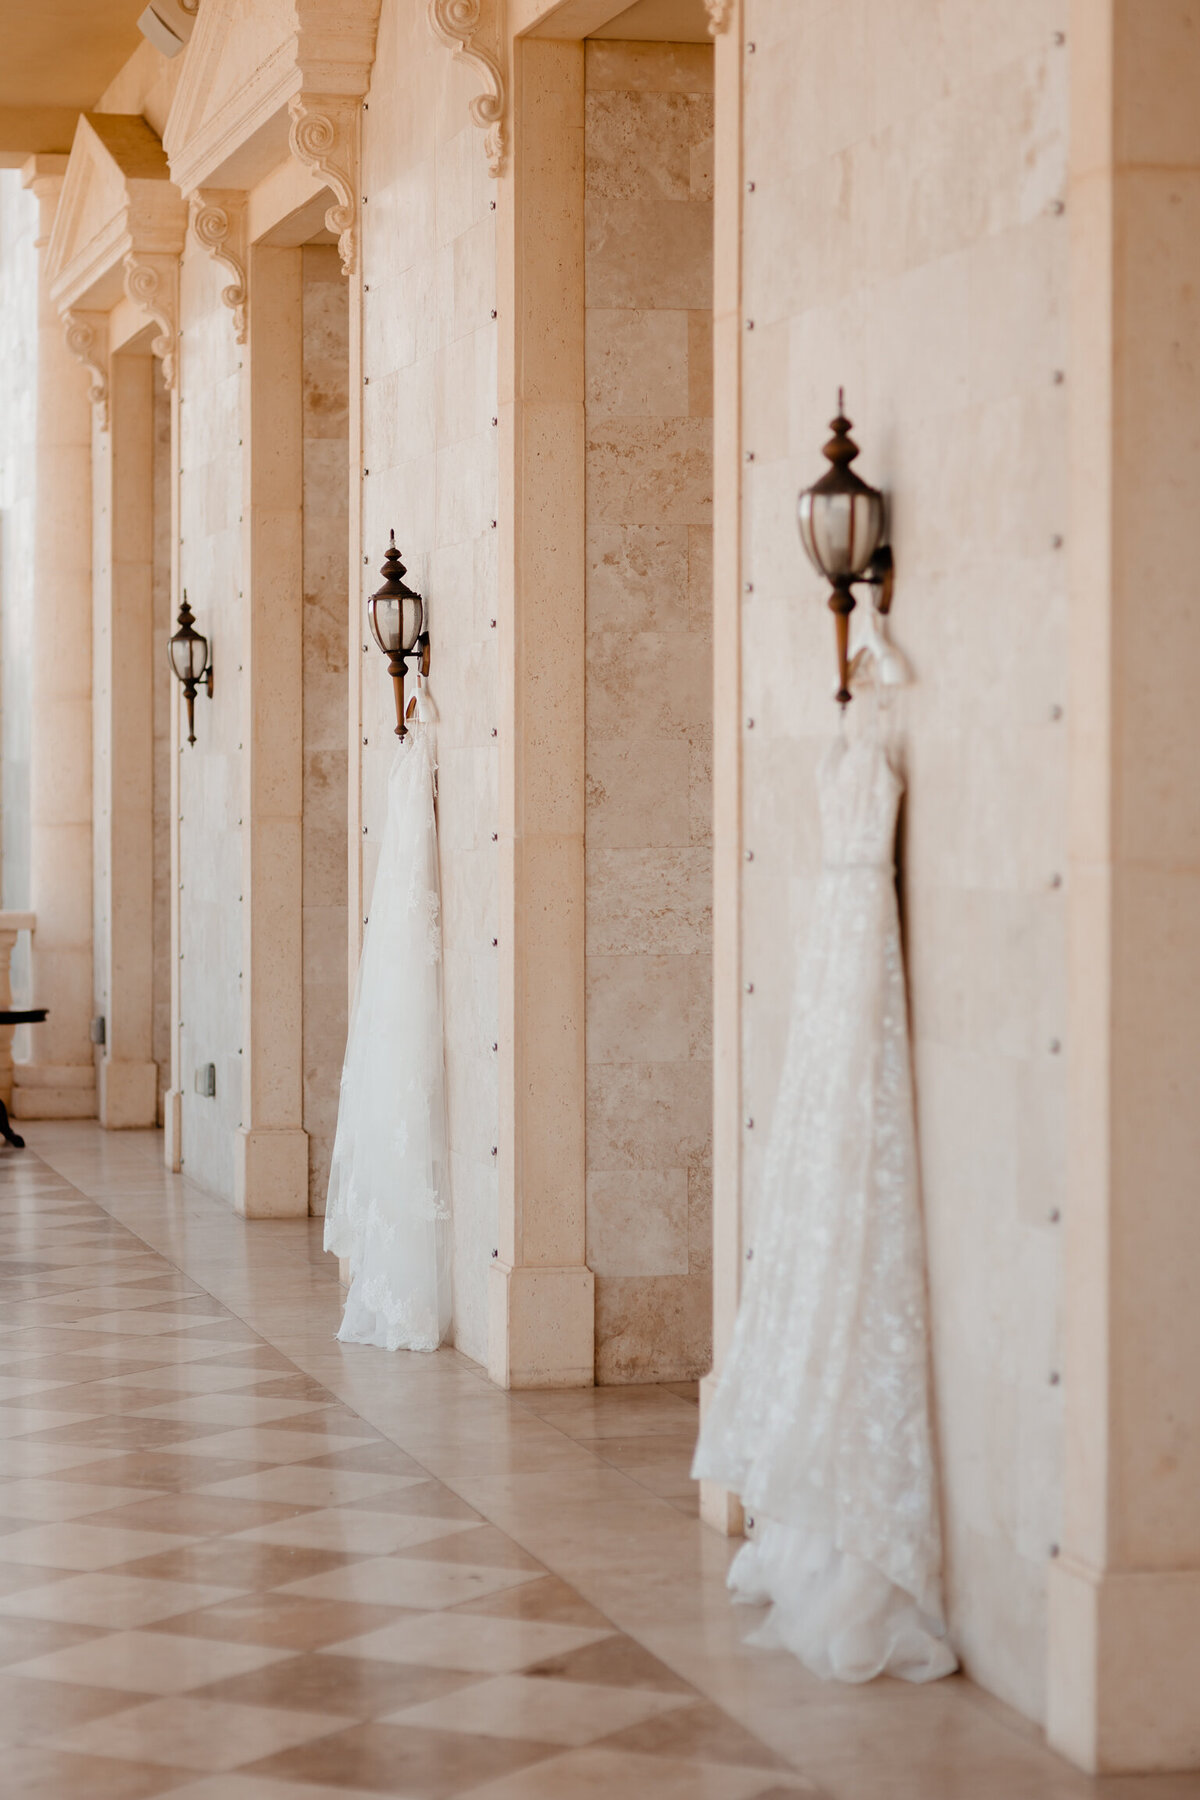 alt="two wedding dresses hanging at the regent weddeing"